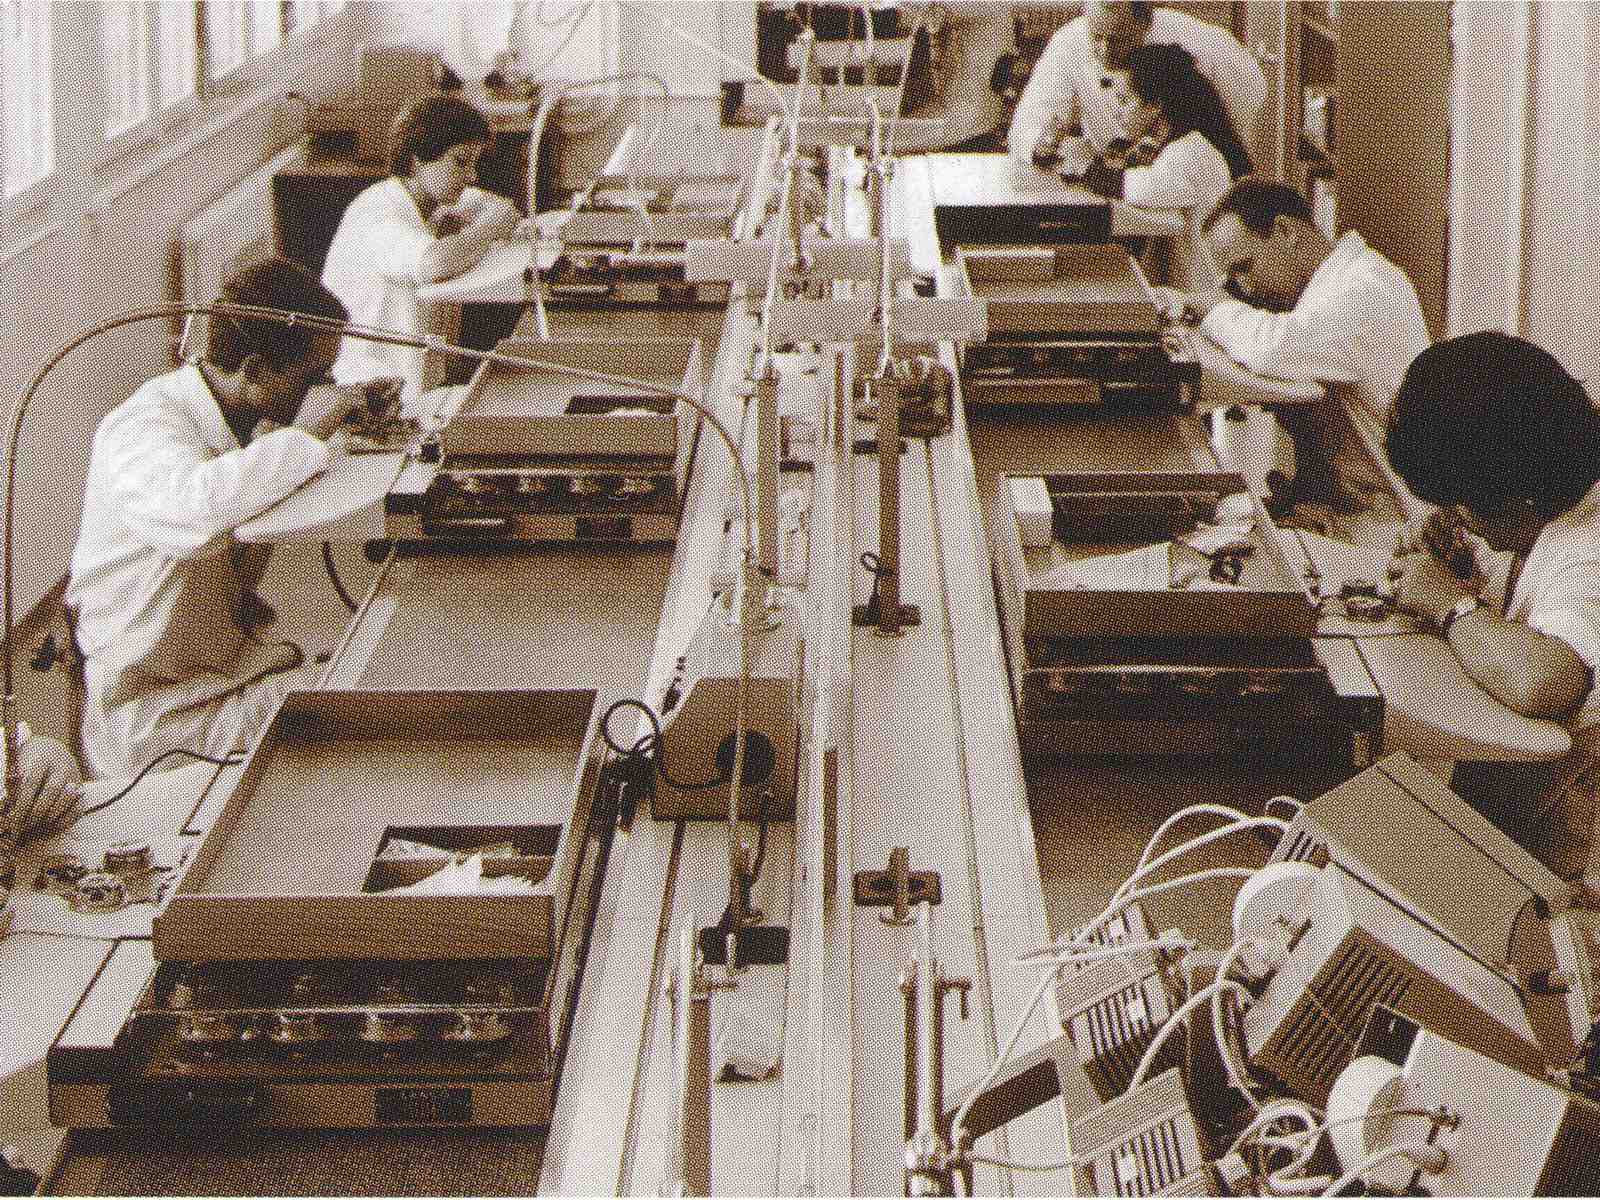 Gerd-Rüdiger Lang am Heuer Werktisch in Biel, frühe 1970er Jahre